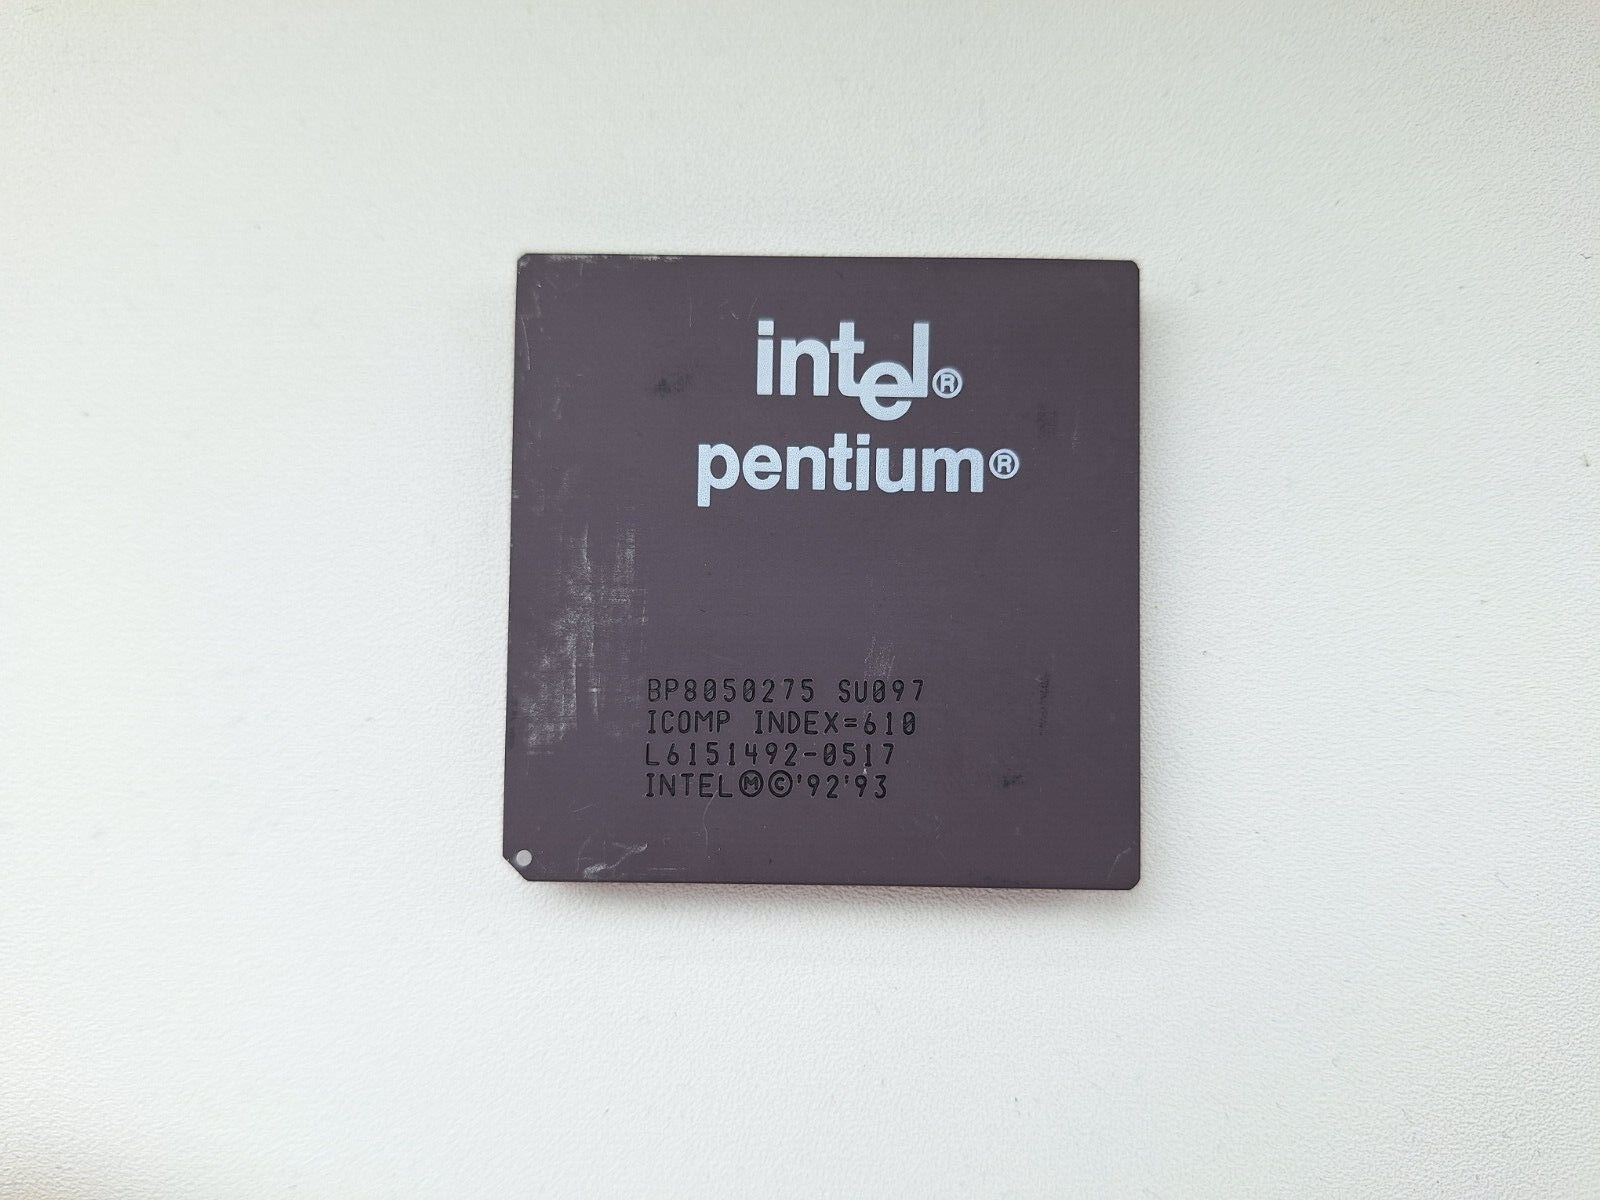 Intel Pentium 120 BP8050275 SU097 very rare Pentium 75 vintage CPU GOLD